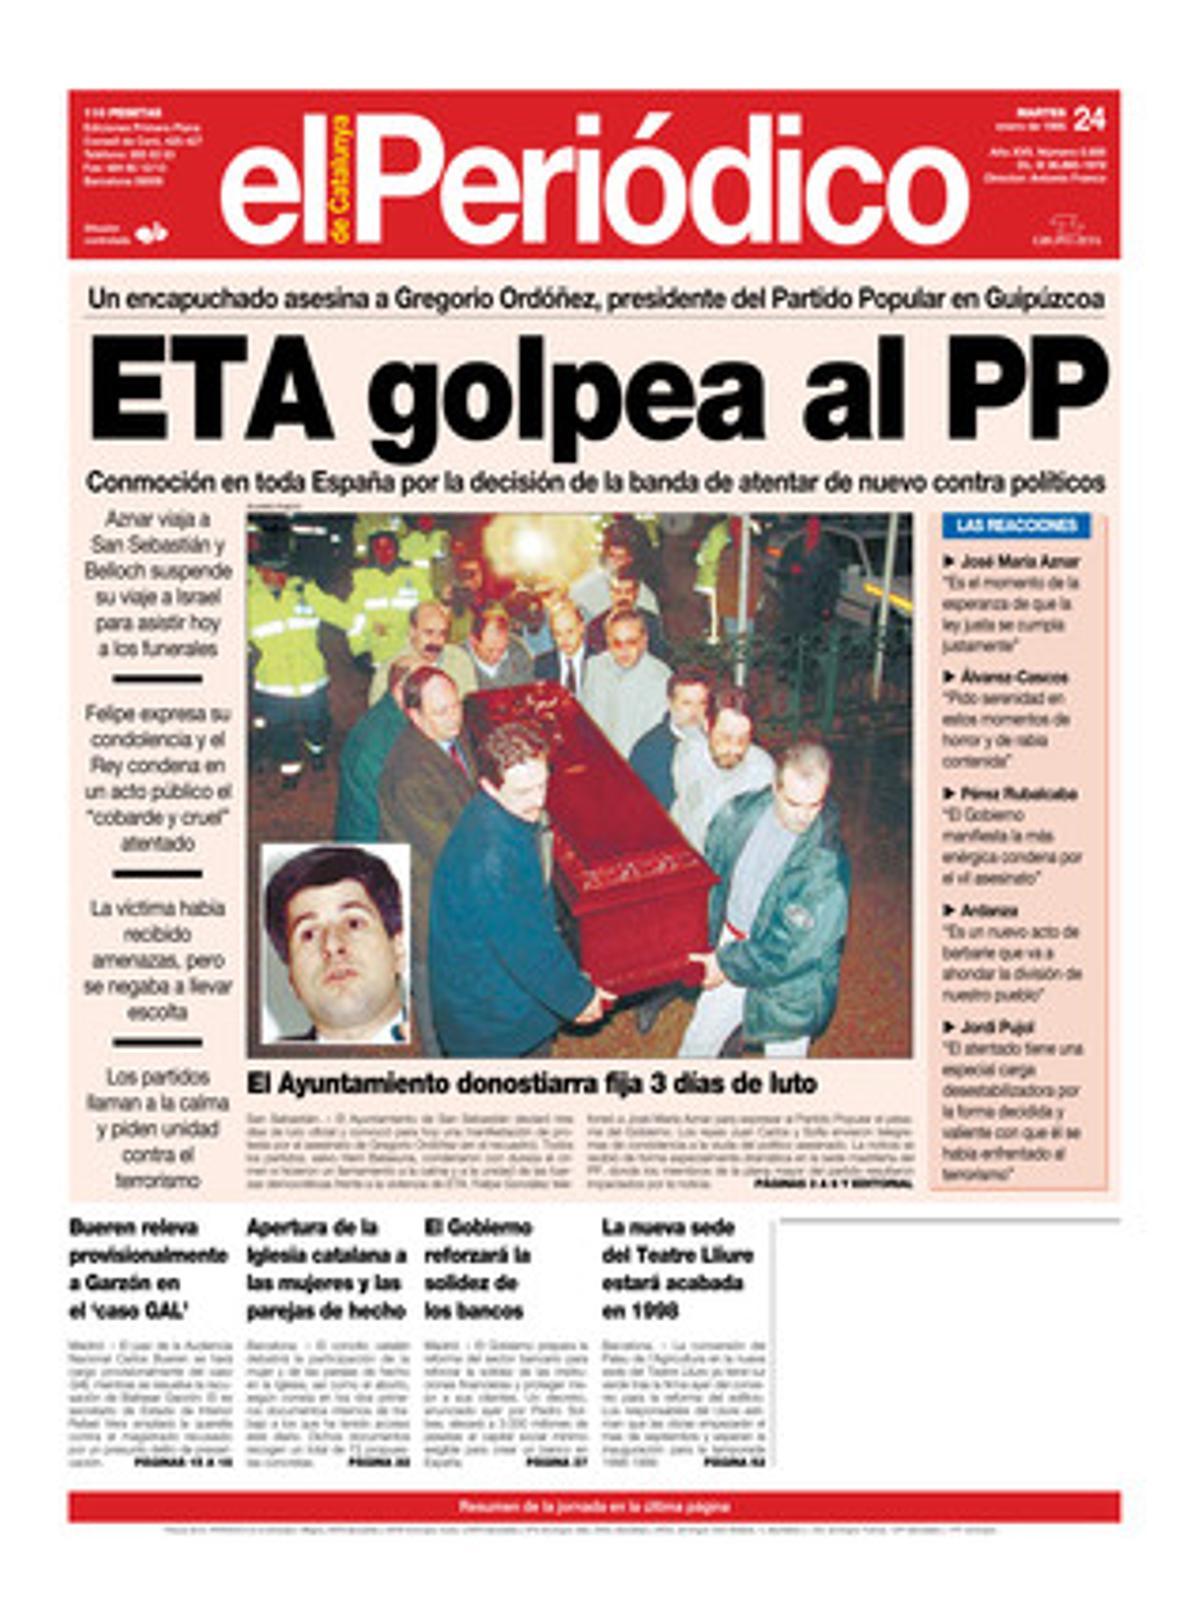 Un encapuchado asesina a Gregorio Ordóñez, presidente del PP en Guipúzcoa. 24/01/1995